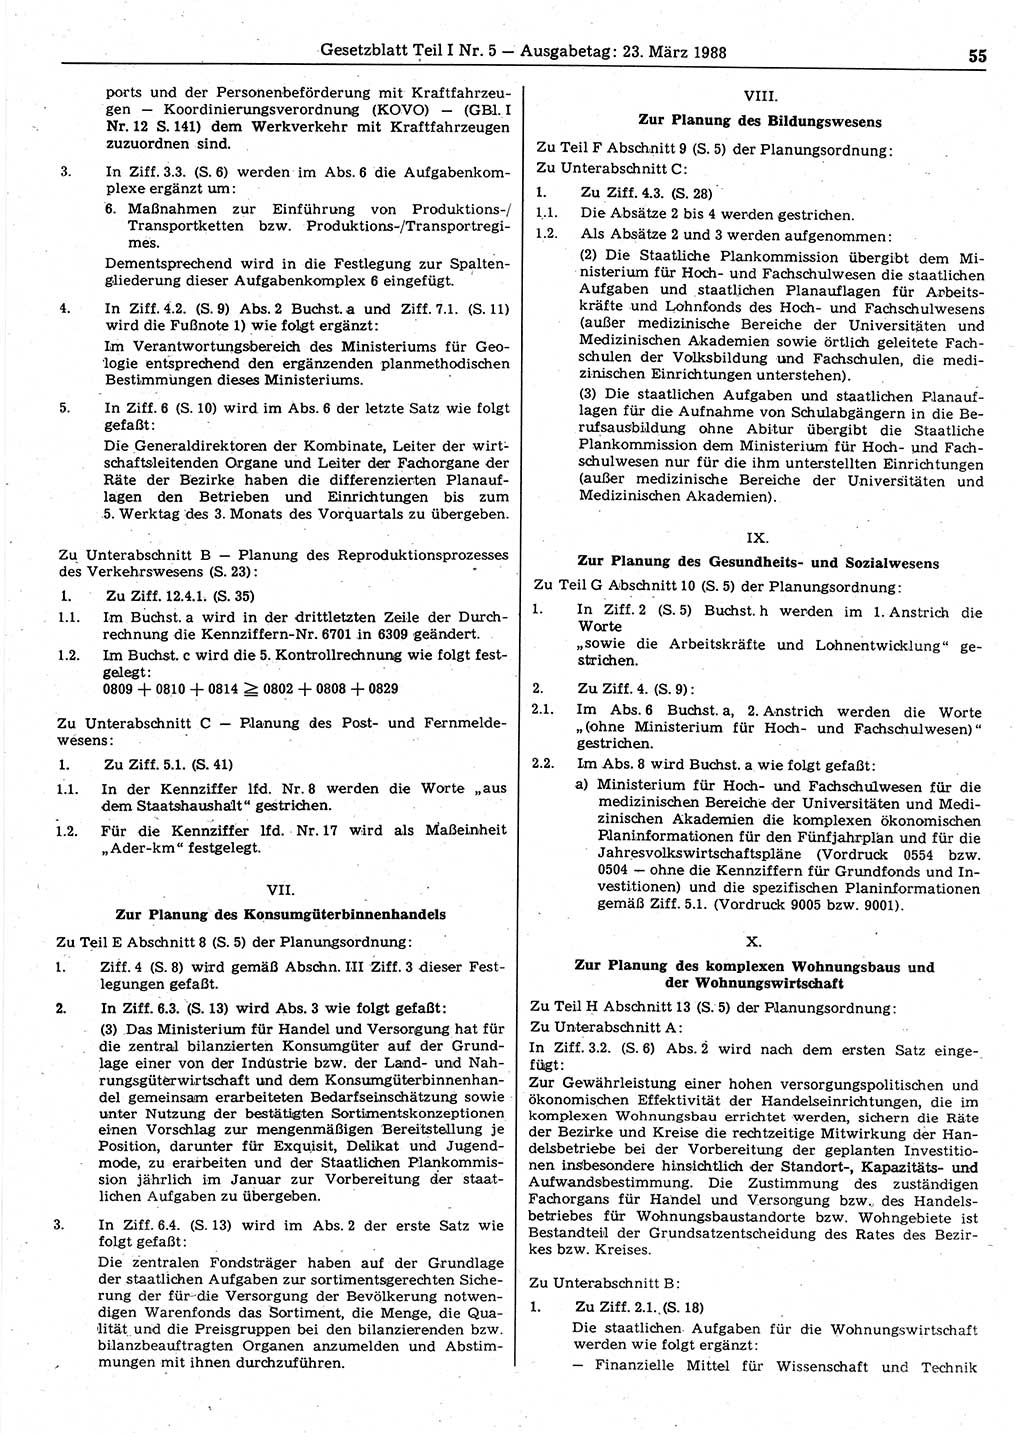 Gesetzblatt (GBl.) der Deutschen Demokratischen Republik (DDR) Teil Ⅰ 1988, Seite 55 (GBl. DDR Ⅰ 1988, S. 55)